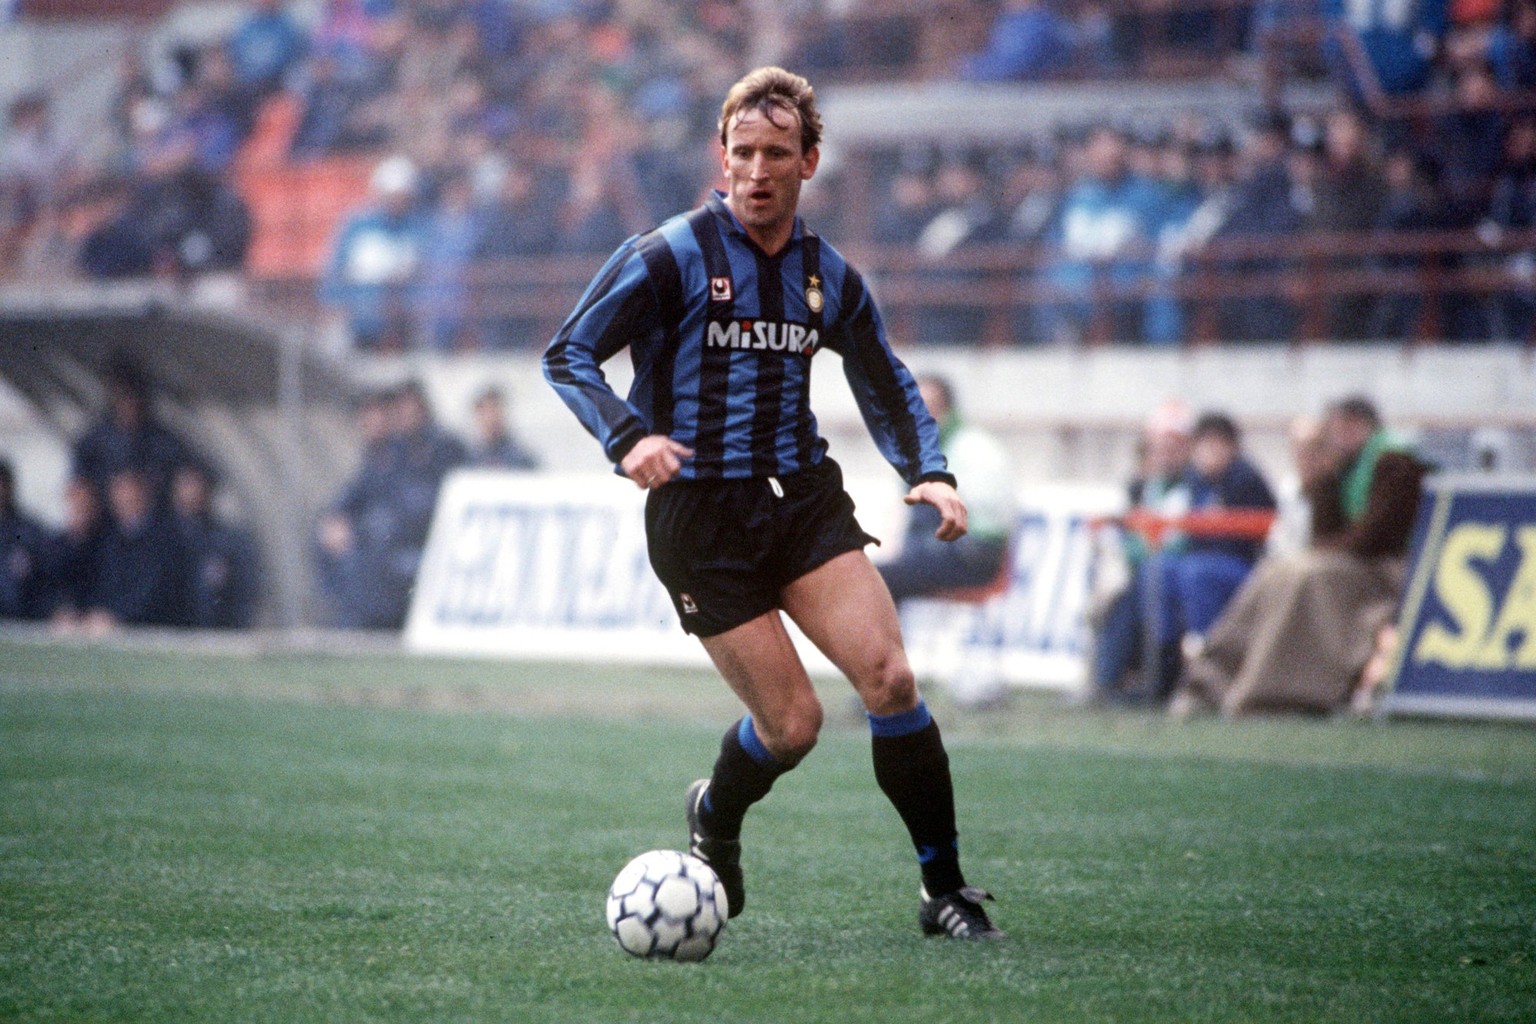 ANDREAS BREHME (Inter Mailand) CAMPIONATO SERIE A 1990-91 PUBLICATIONxNOTxINxITA

Andreas Brehme Inter Milan Campionato Series A 1990 91 PUBLICATIONxNOTxINxITA